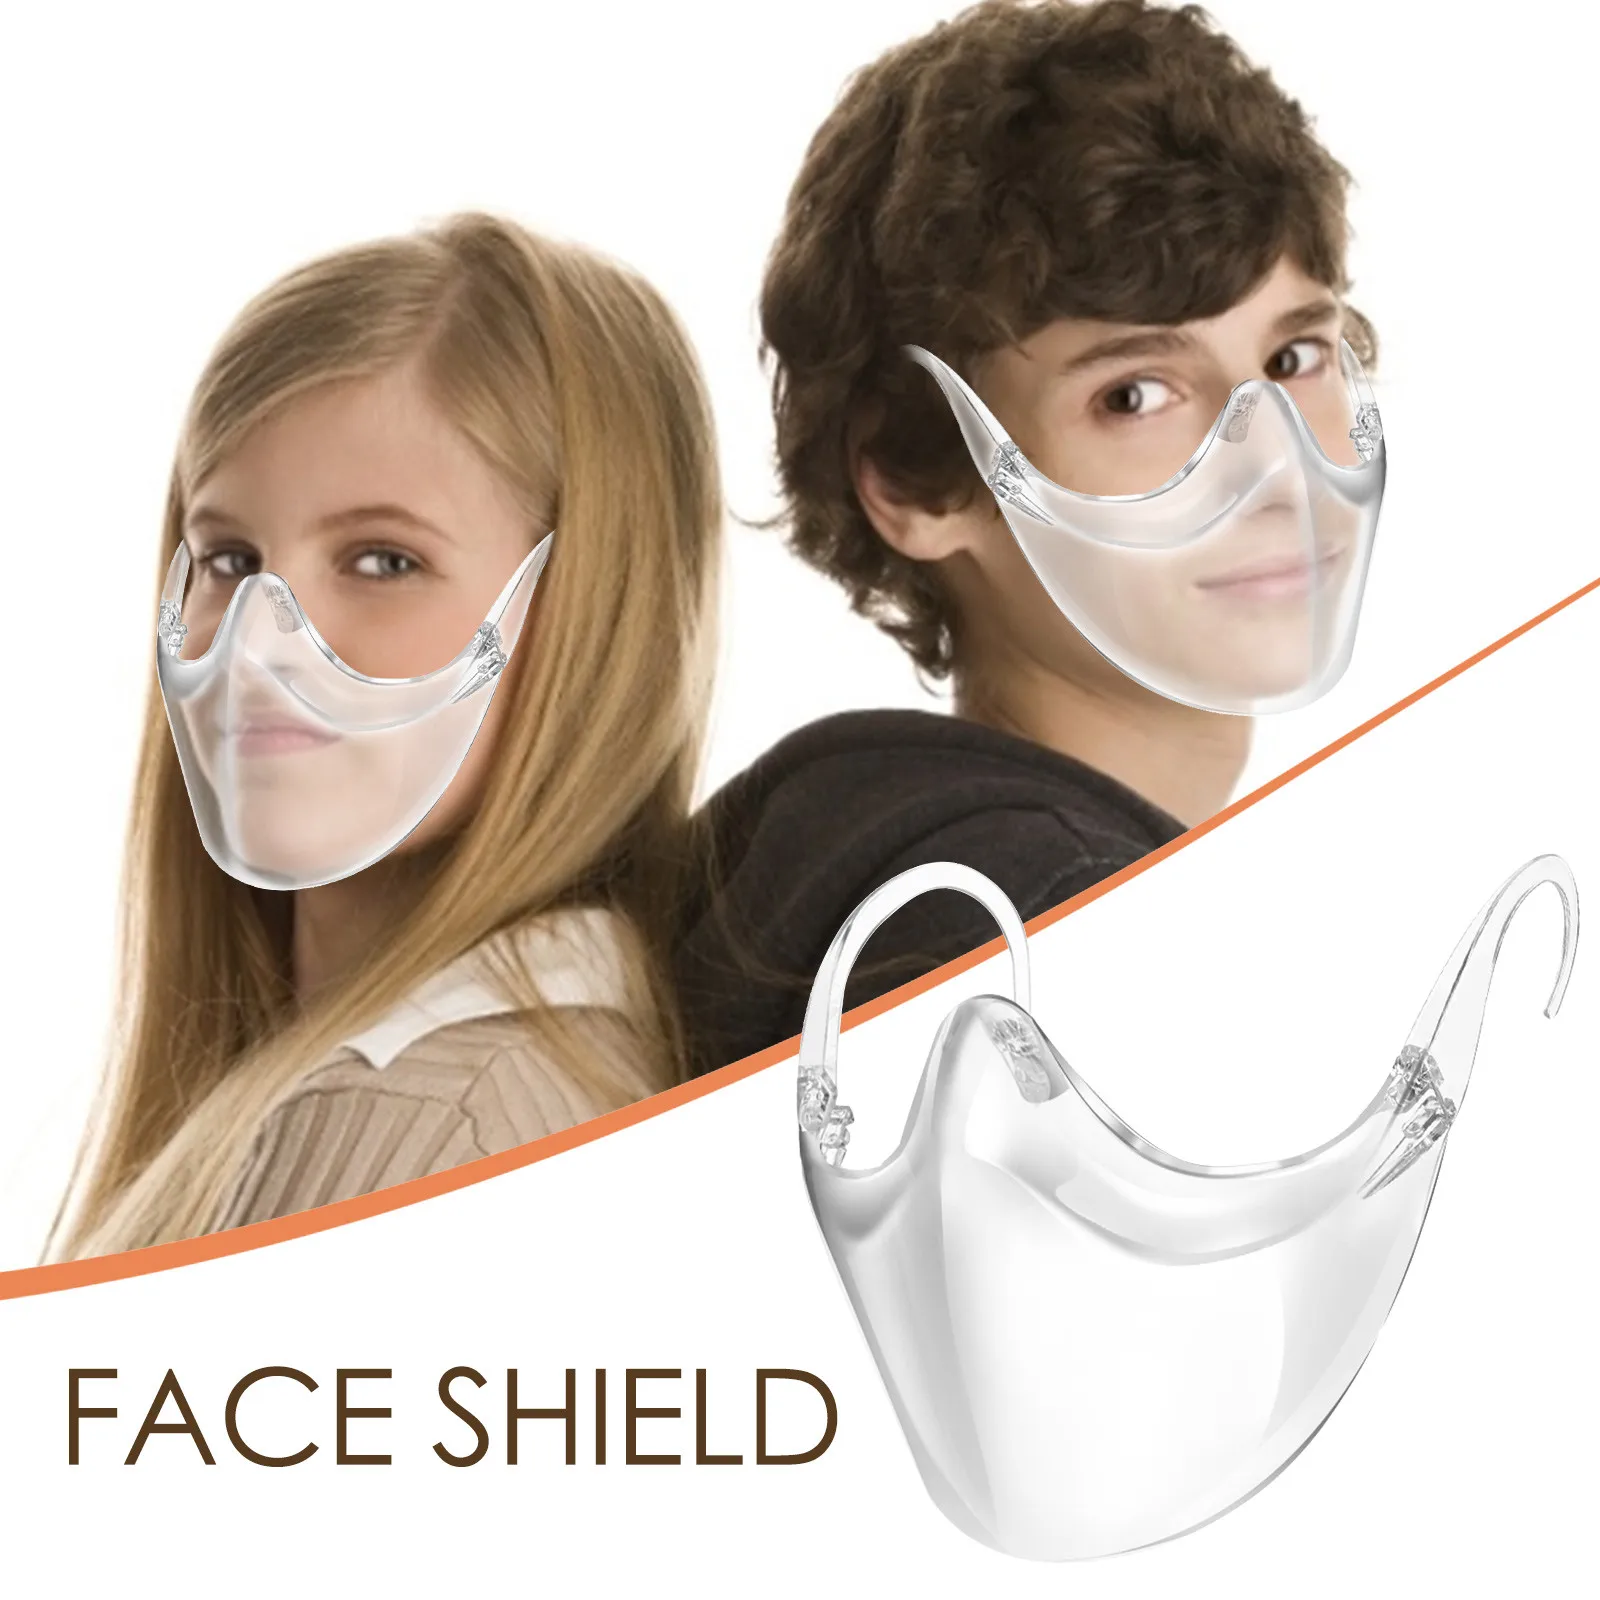 

Masque lavable Rhinestones Mouth Outdoor Dustproof mascarillas reusable facemask cubre bocas mascara facial Halloween cosplay